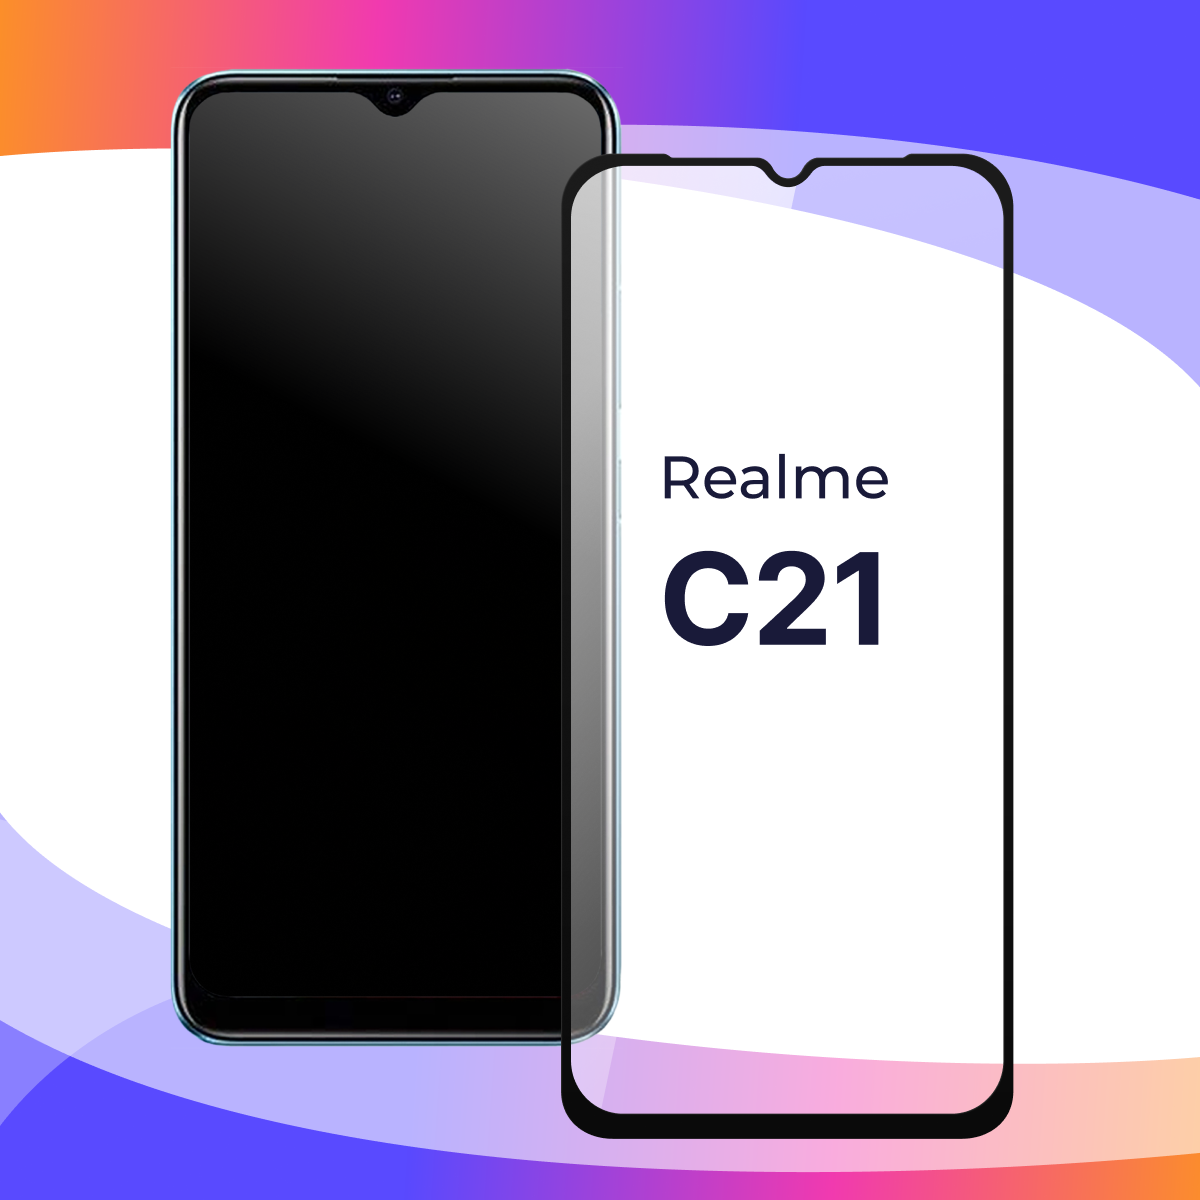 Защитное стекло для телефона Realme C21 / Глянцевое противоударное стекло с олеофобным покрытием на смартфон Реалми С21